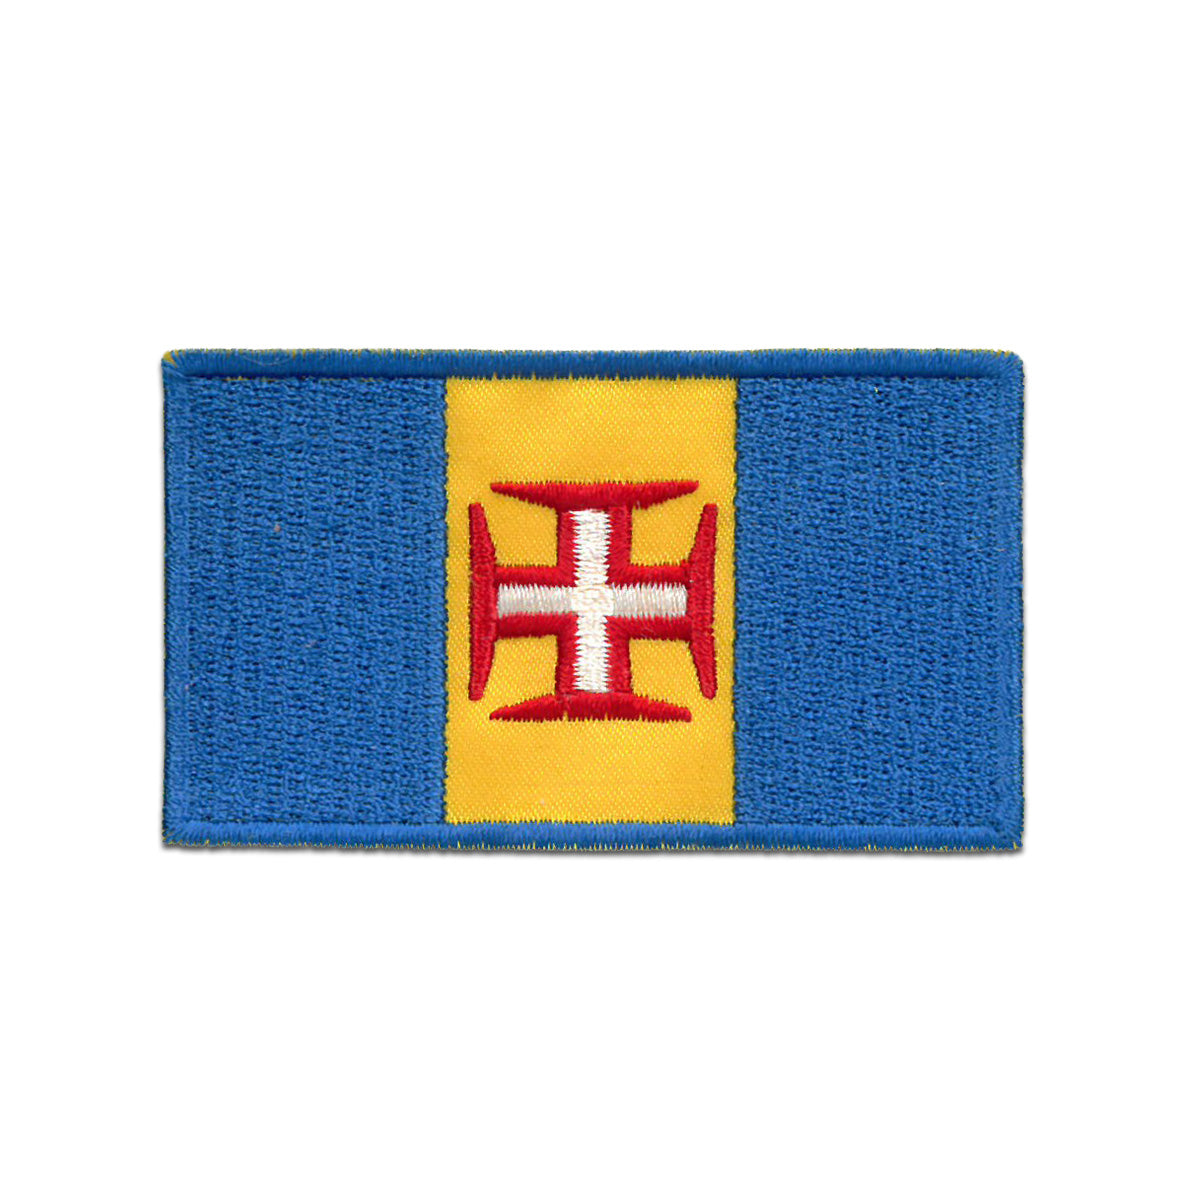 Bandeira da Região Autónoma da Madeira